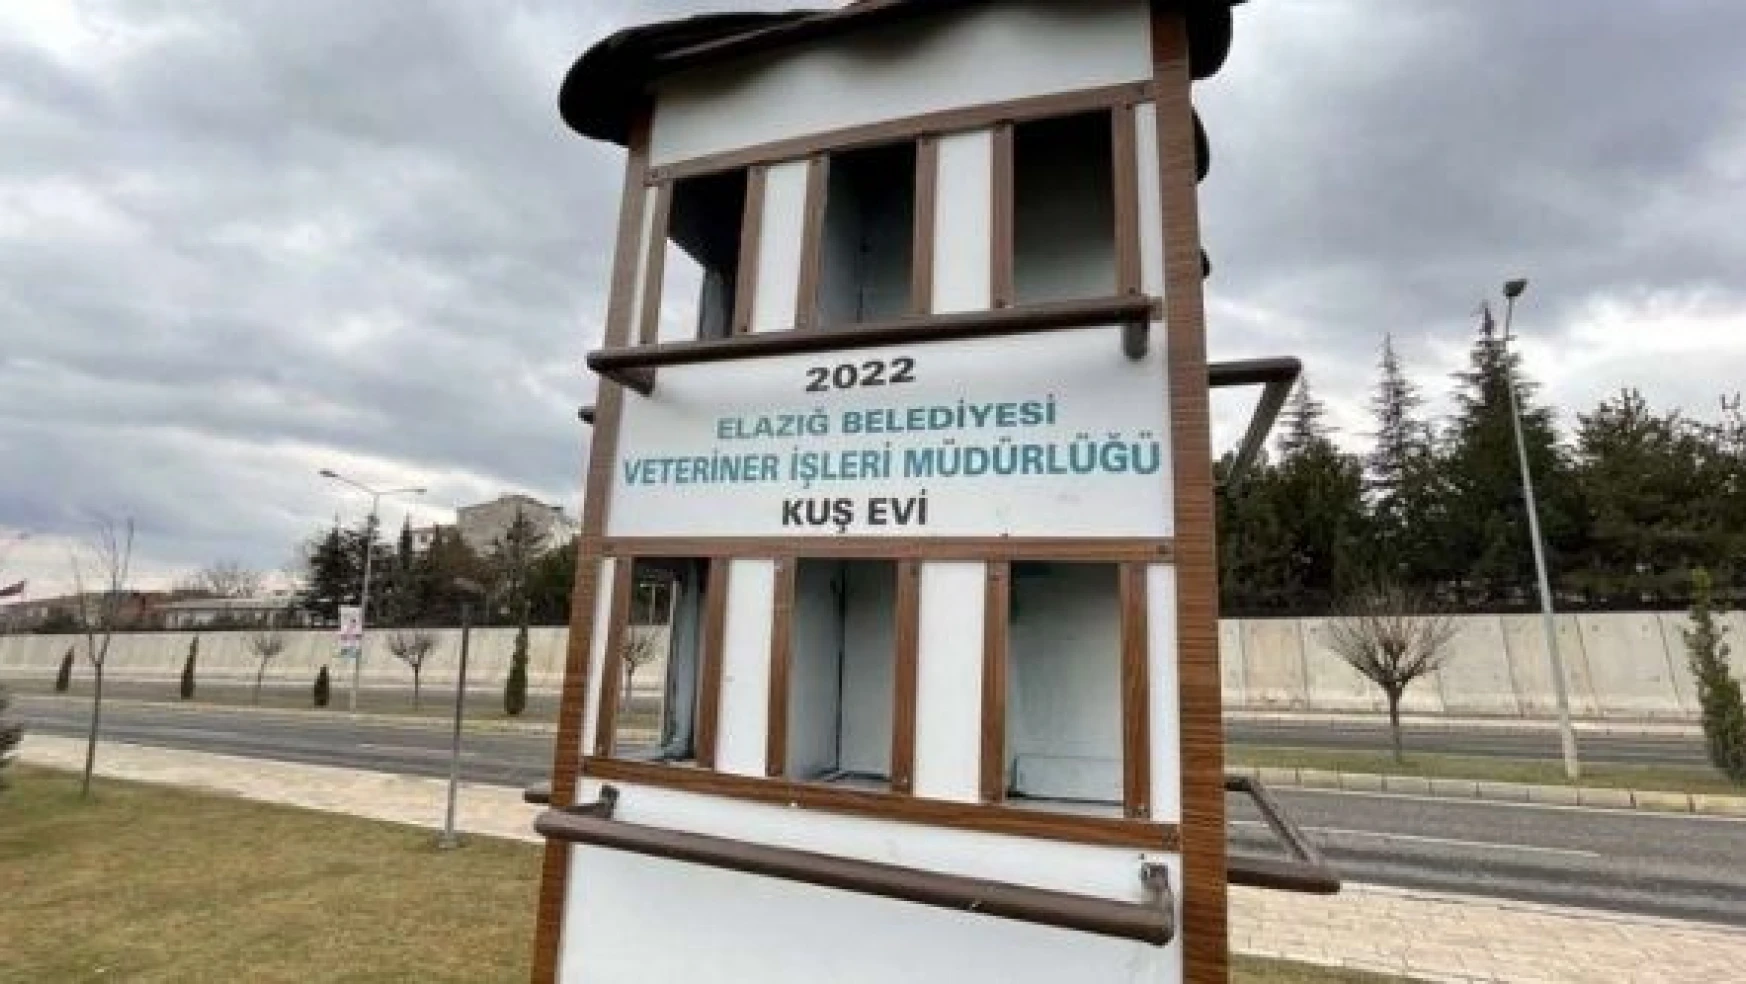 Elazığ Belediyesi'nin inşaa ettiği 'dubleks kuş evleri' beğeni topluyor